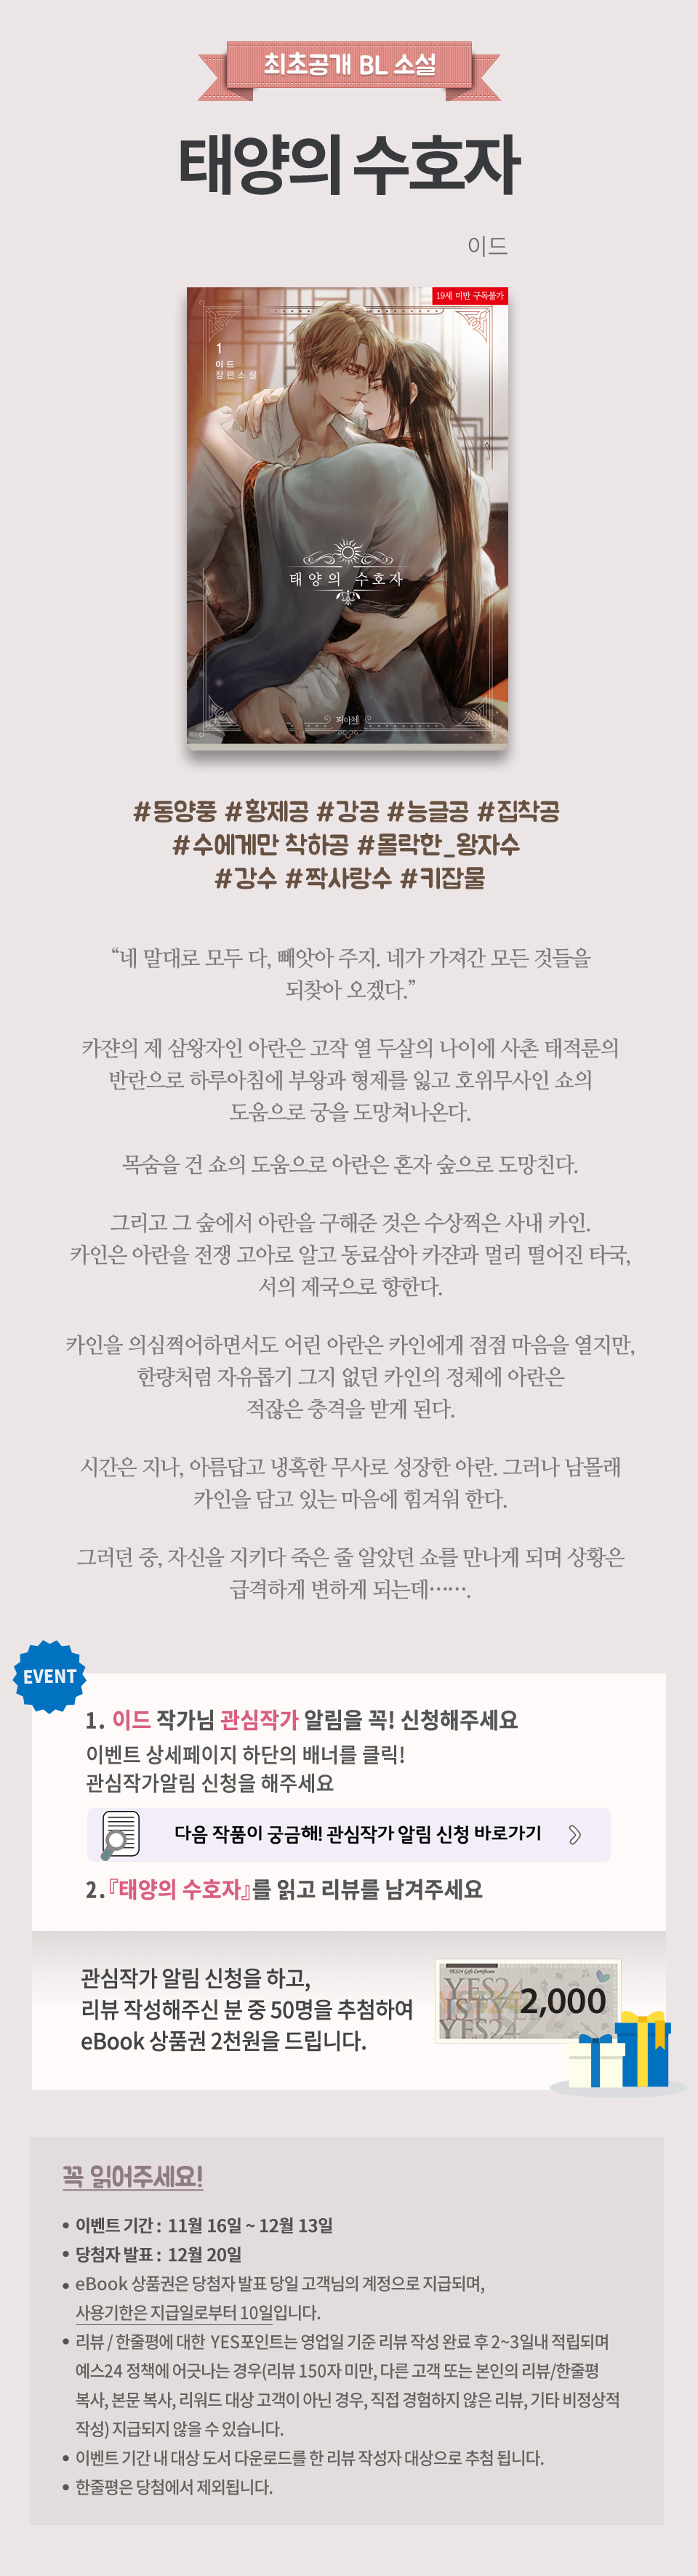 최초공개] 이드『태양의 수호자』 | Yes24 모바일 이벤트